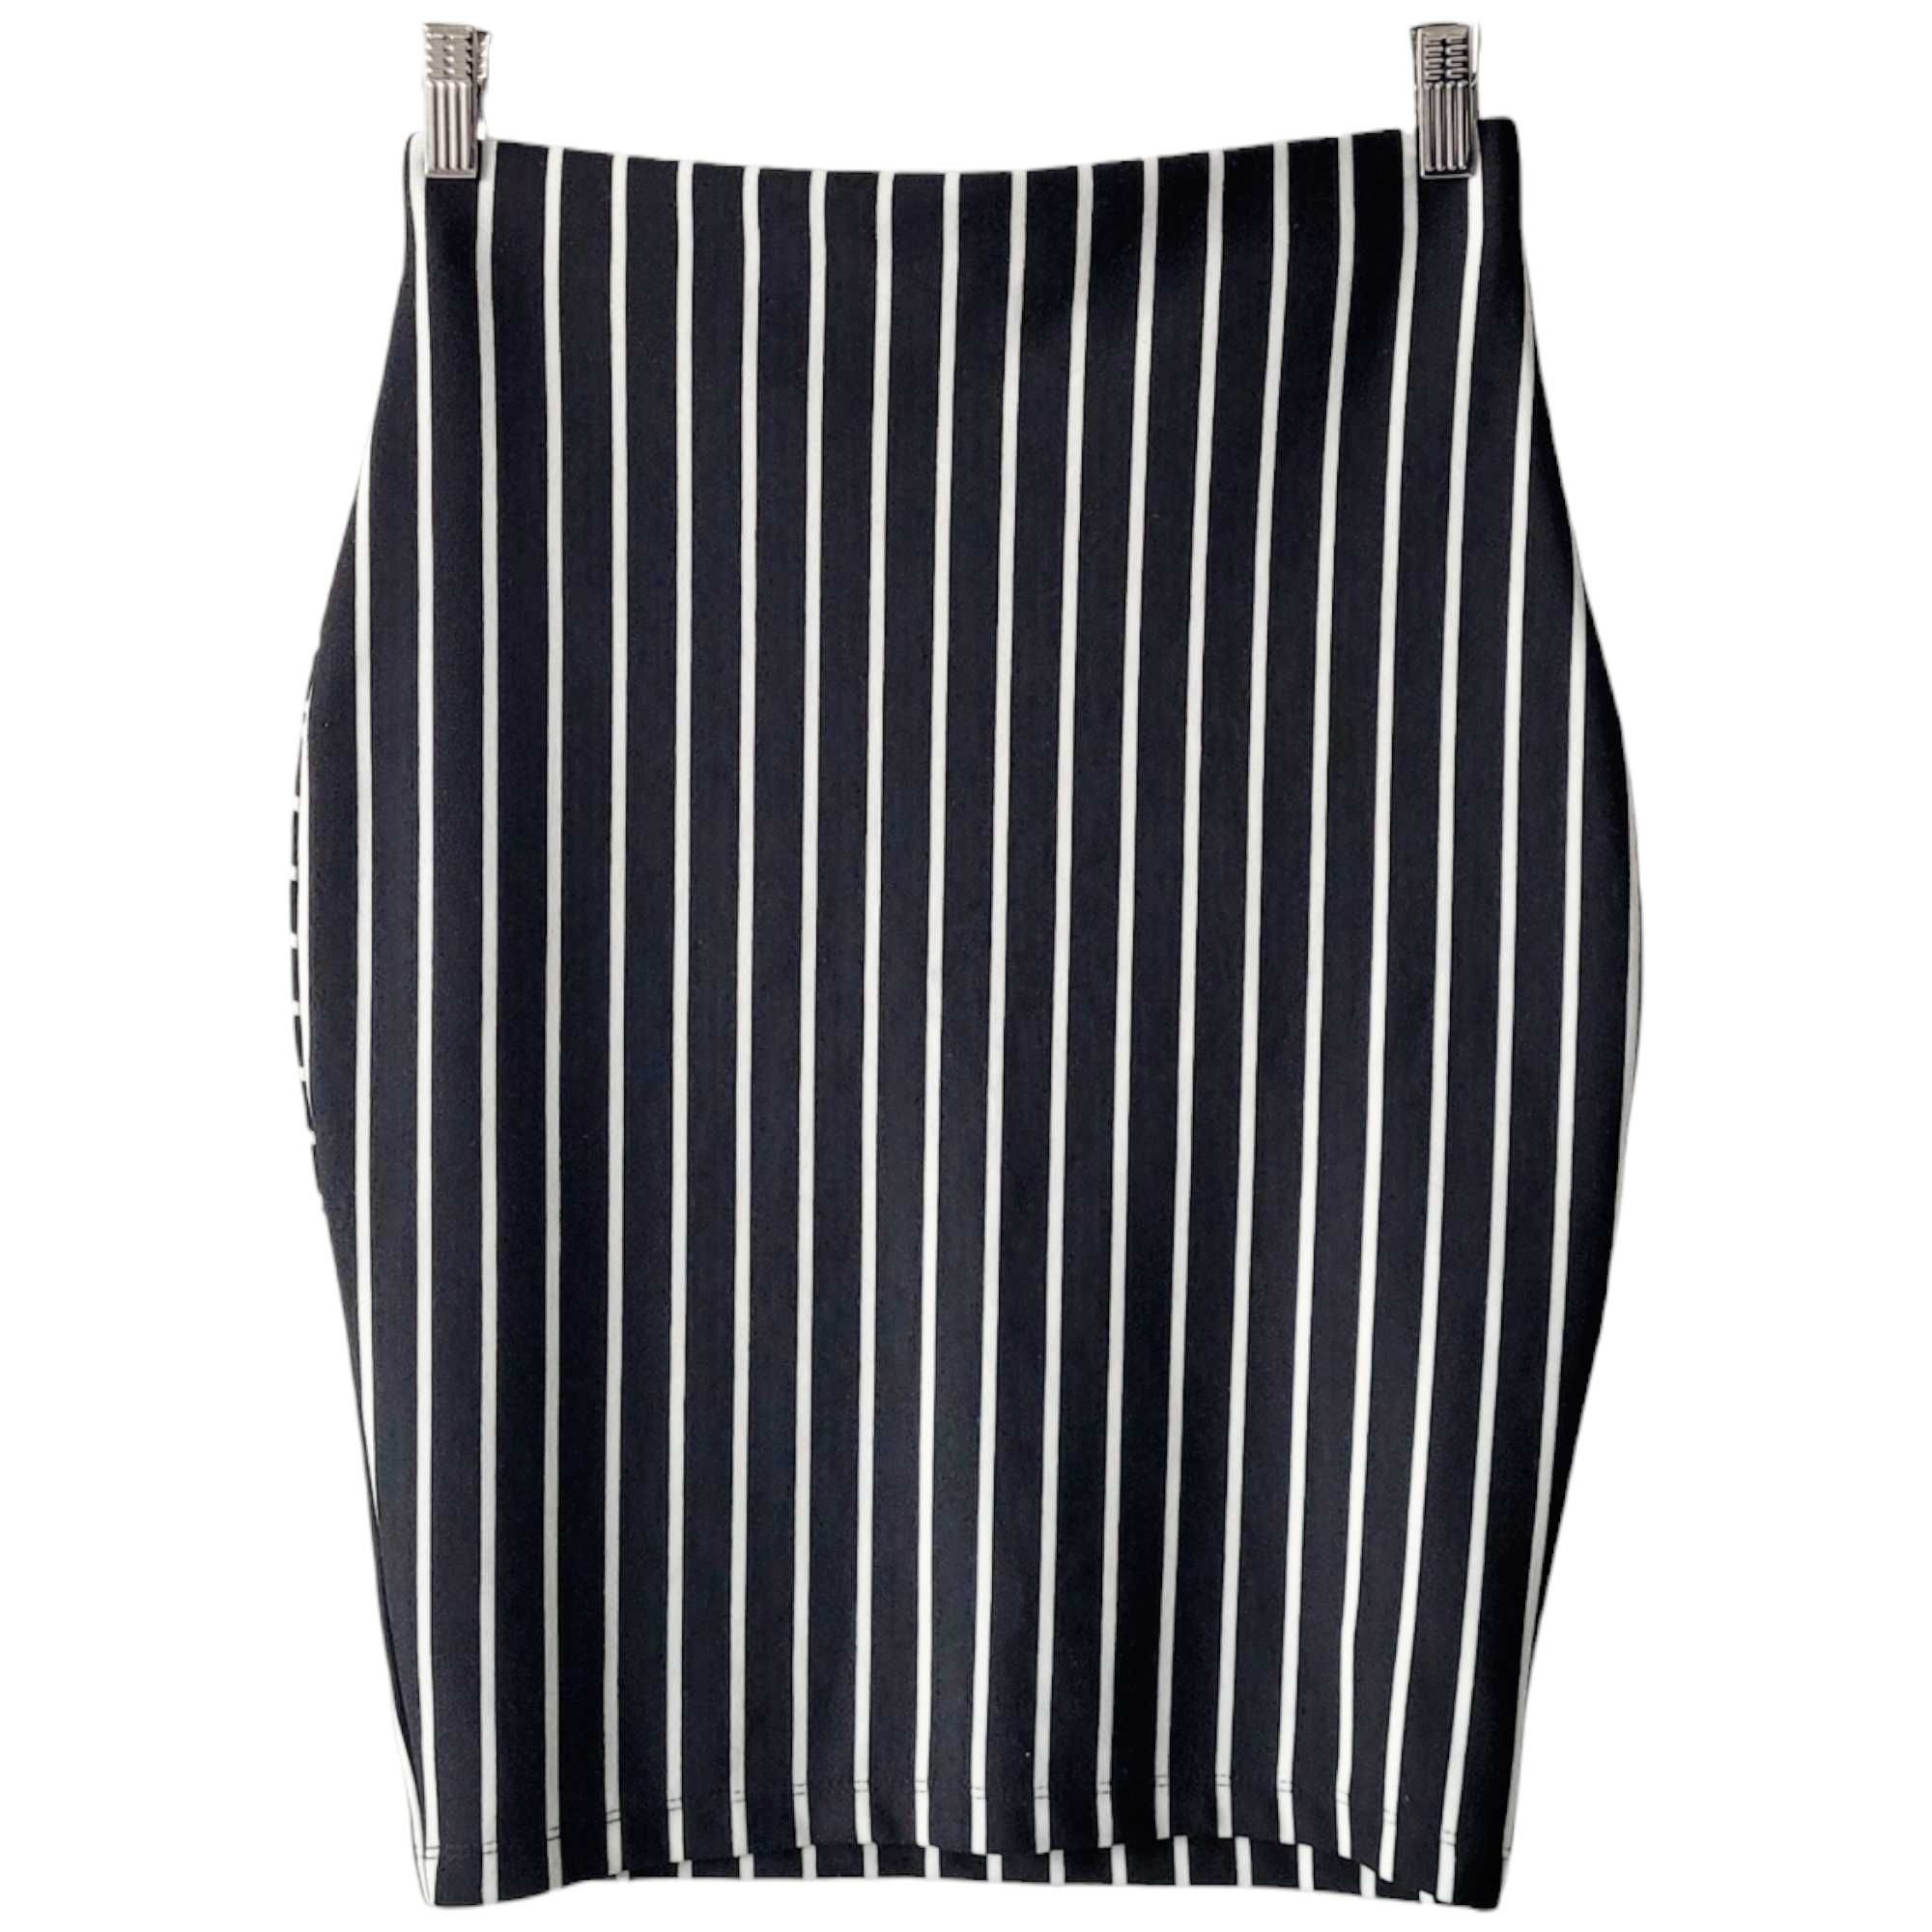 Czarna biała wąska spódnica bandażowa w paski S Orsay ołówkowa casual